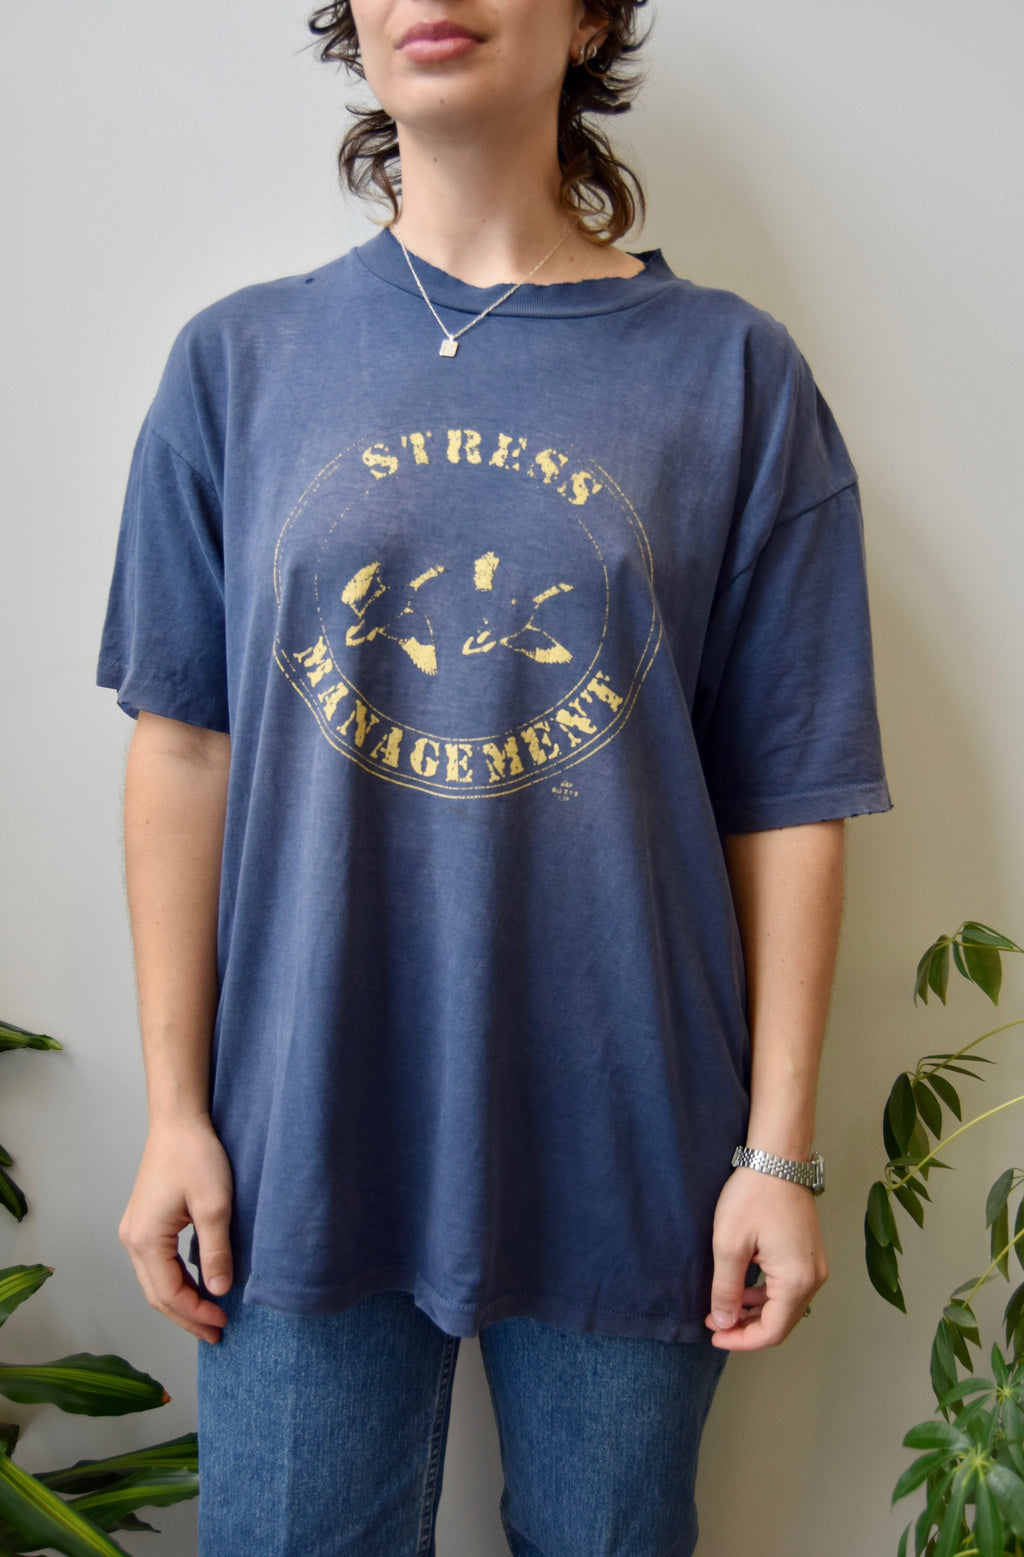 Stress Management T-Shirt